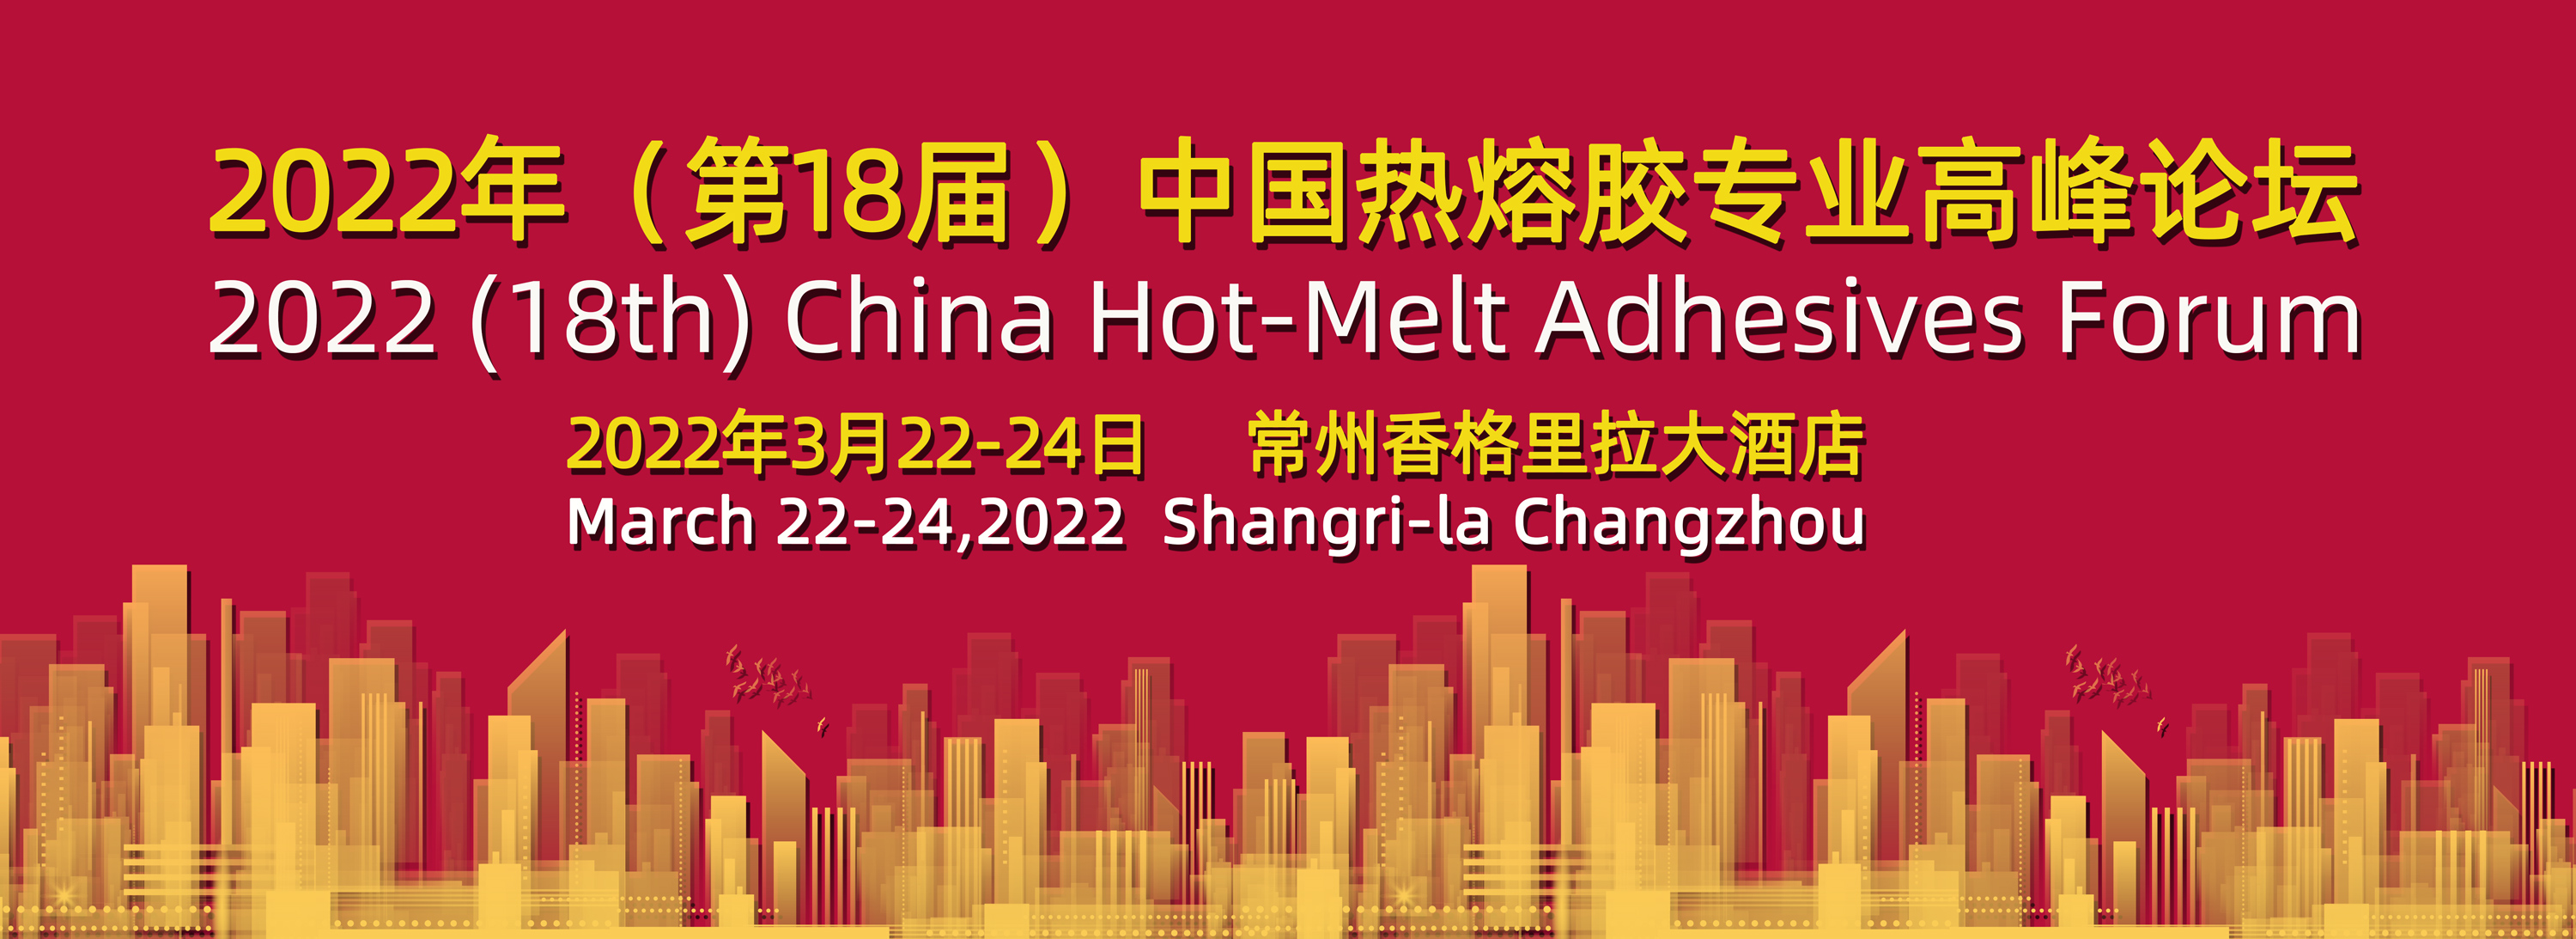 2022(18th )China Hot-Melt Adhesives Forum